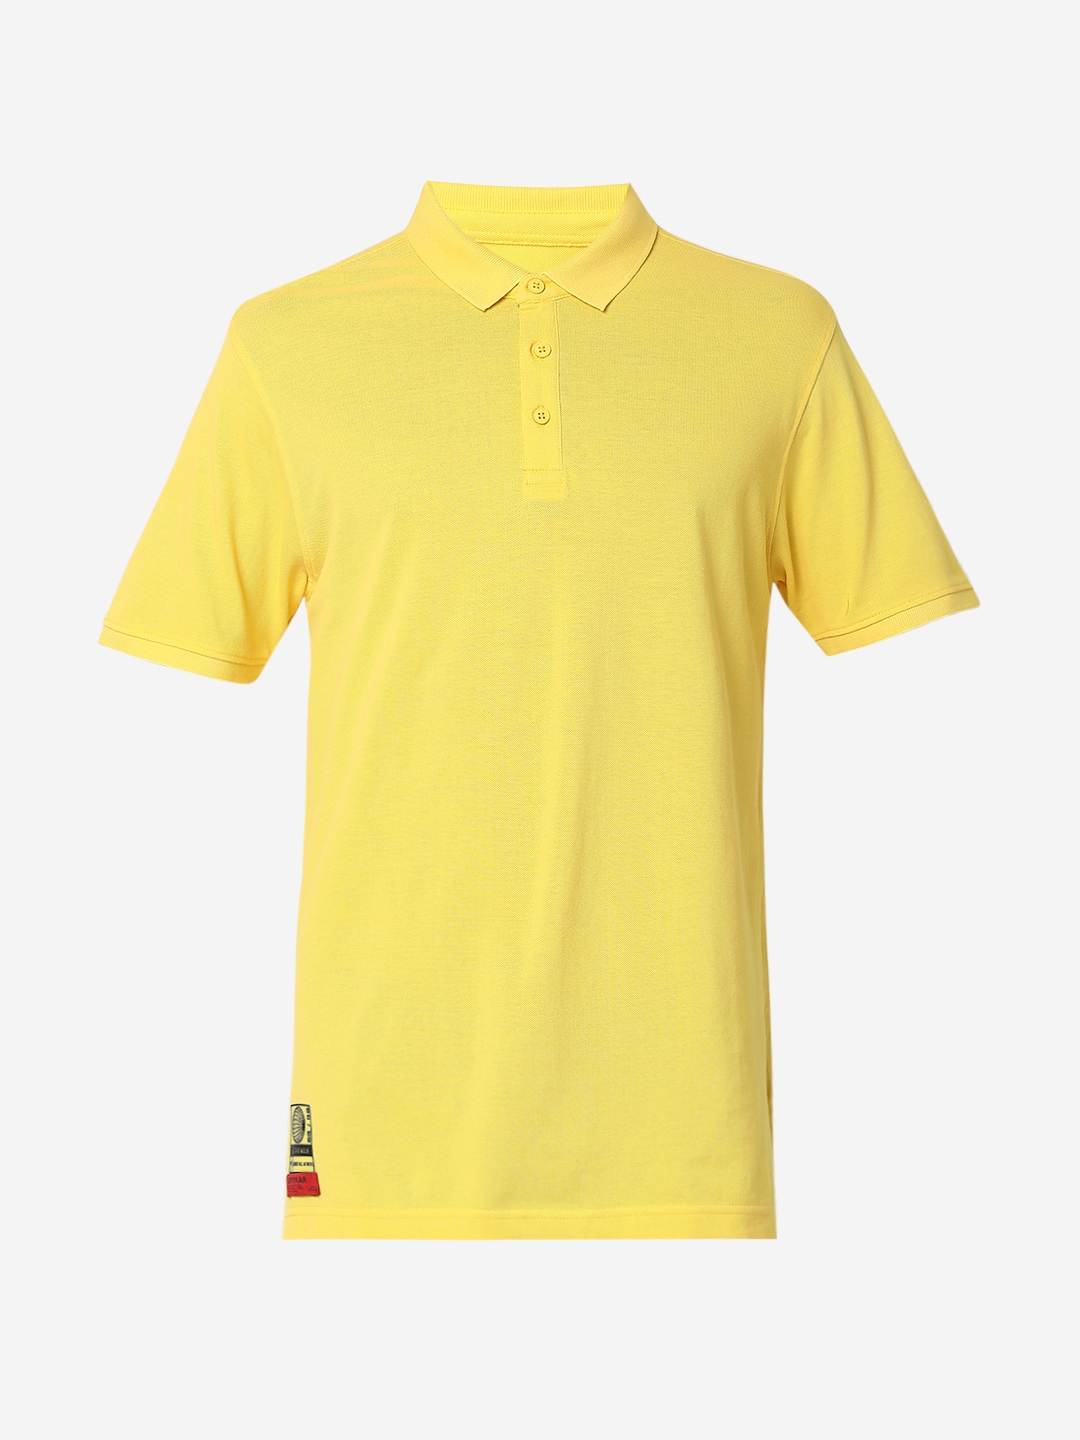 spykar | Spykar Yellow Cotton T-Shirts 6